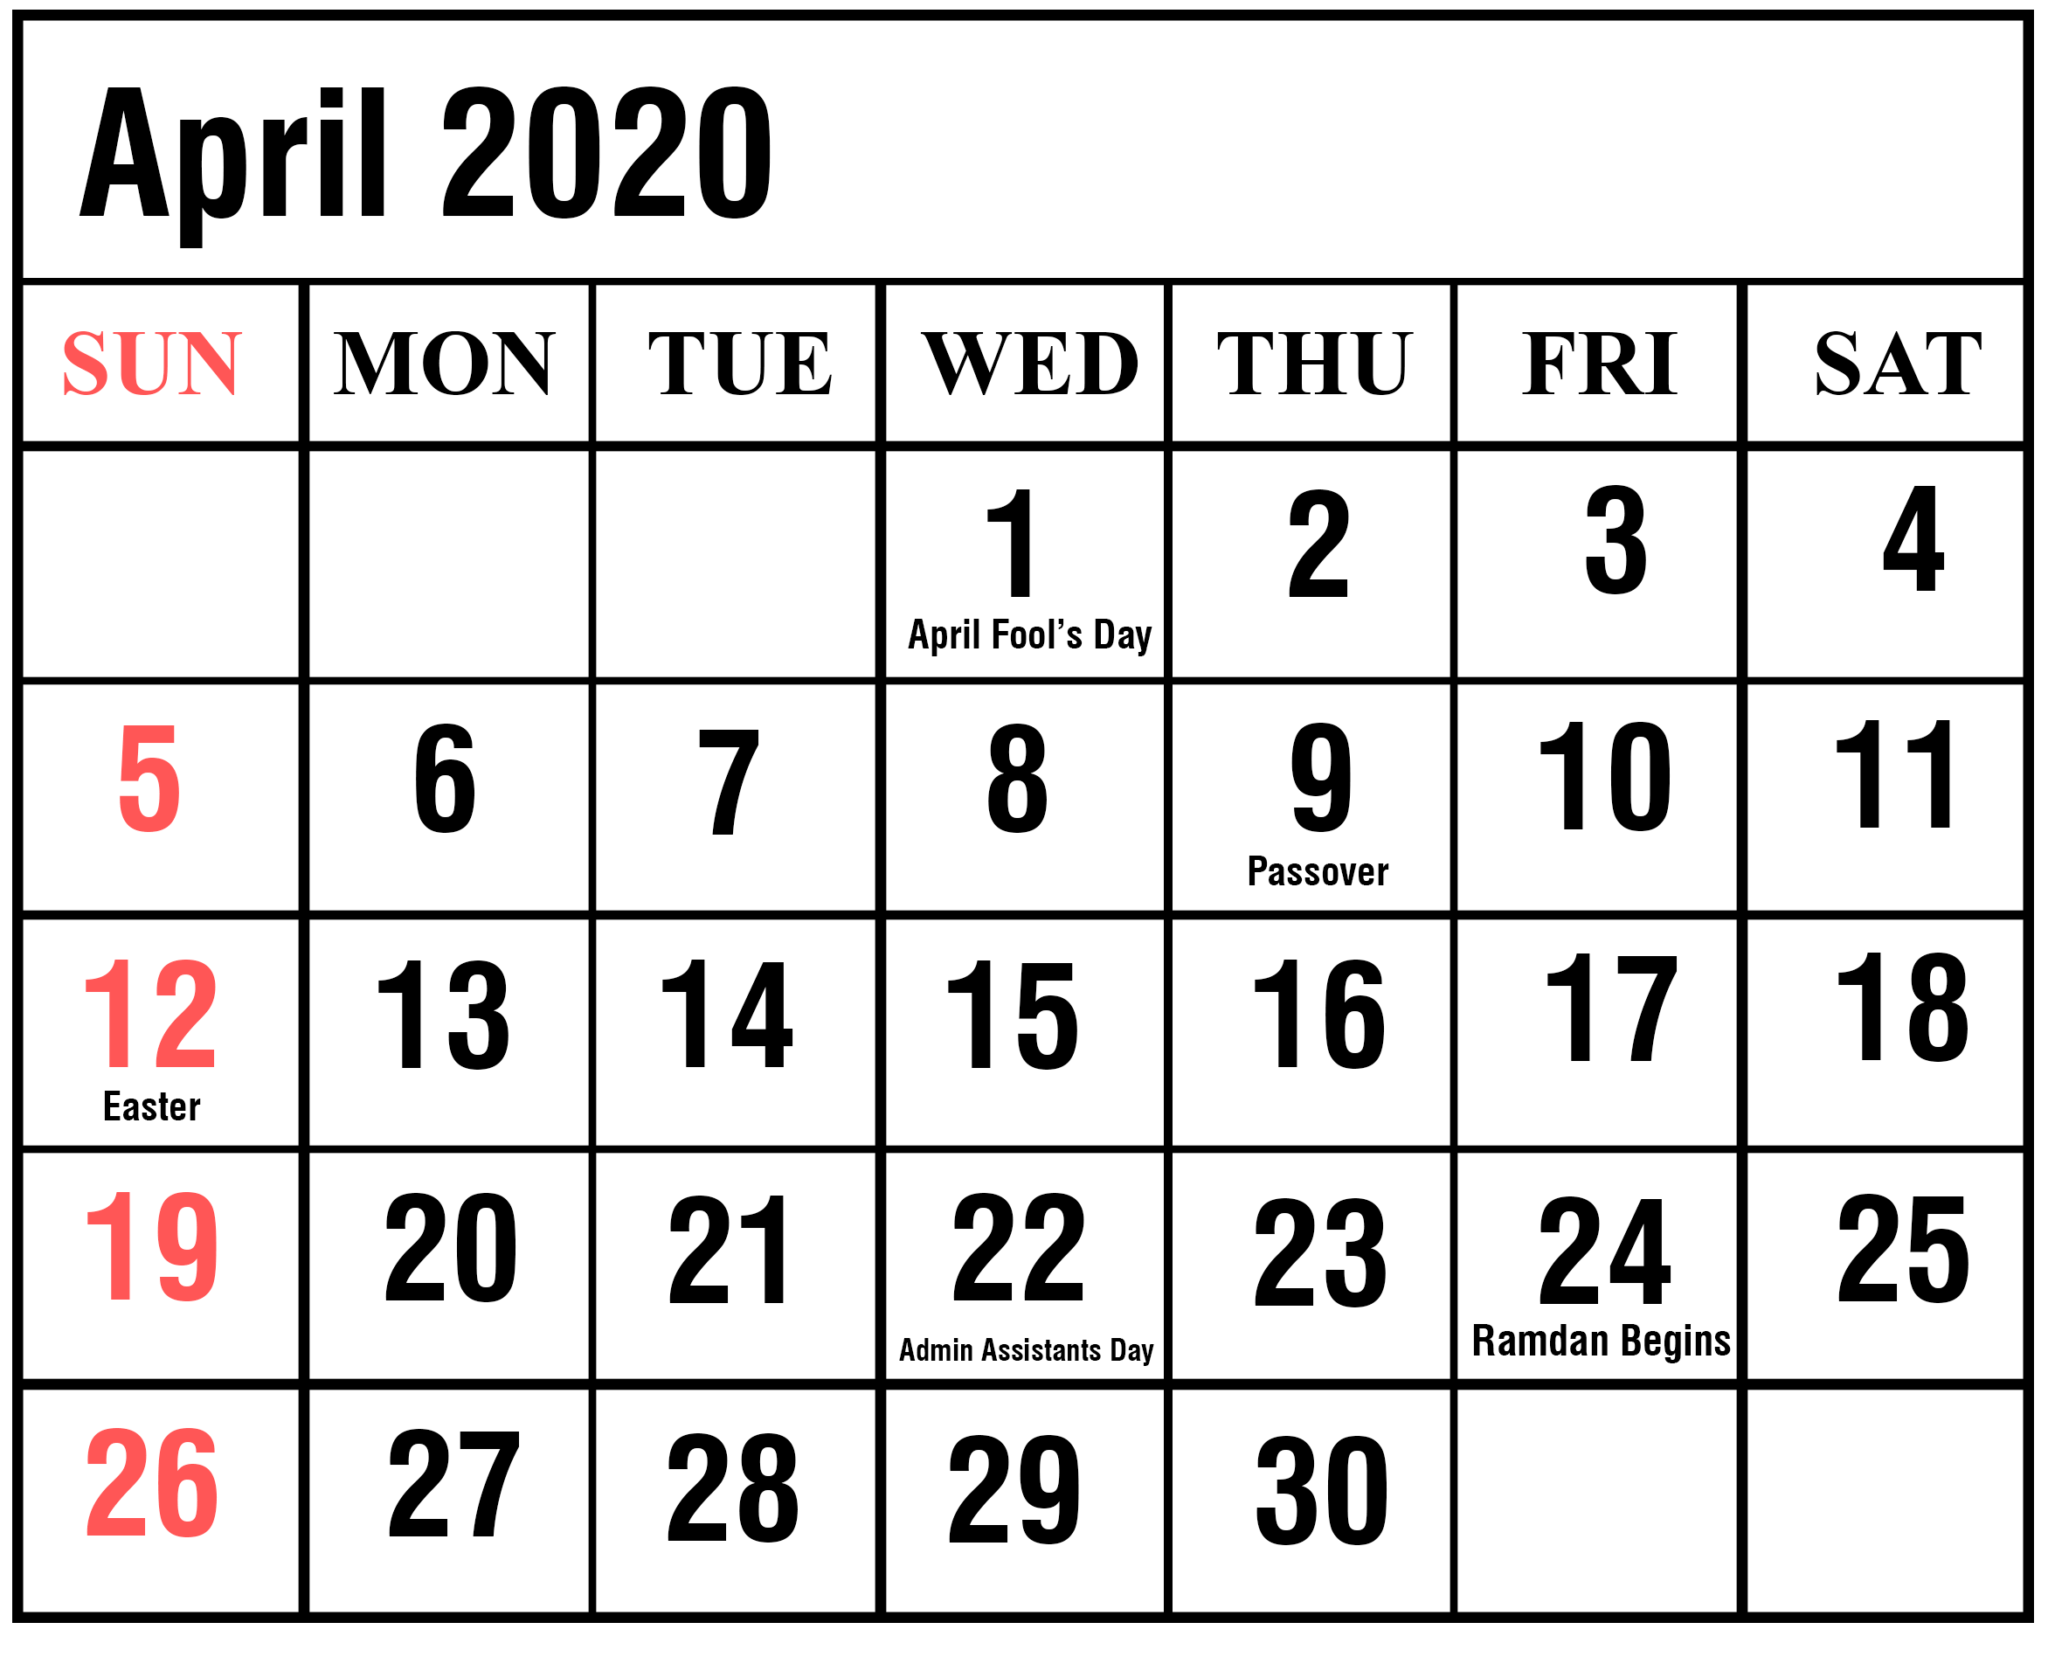 April 2020 Calendar PDF Sheet For Exam Free Printable Calendar